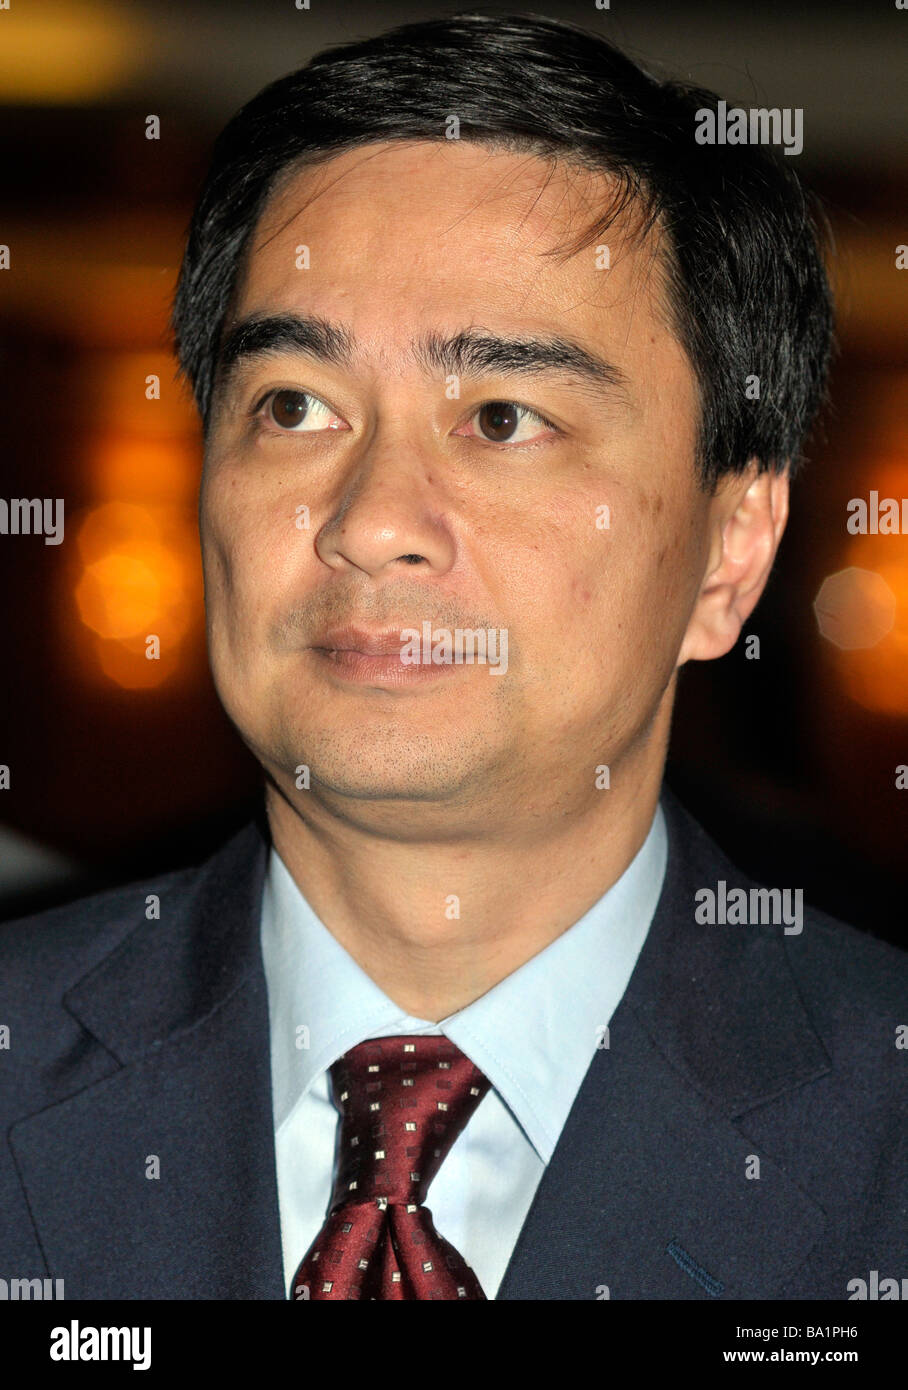 Thailand's Prime Minister Abhisit Vejjajiva Stock Photo